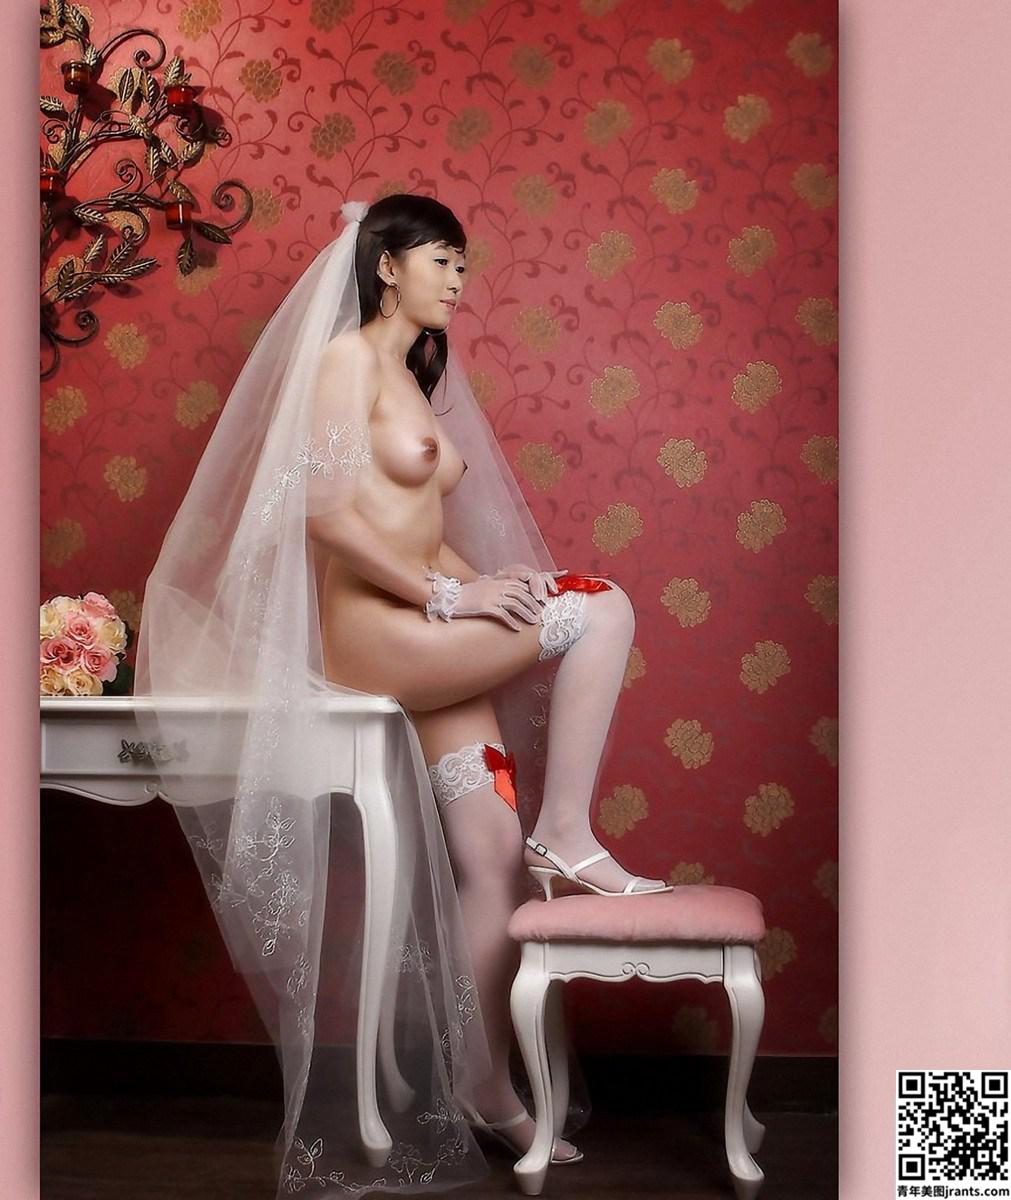 知性美女模特裸体婚纱人体写真福利套图